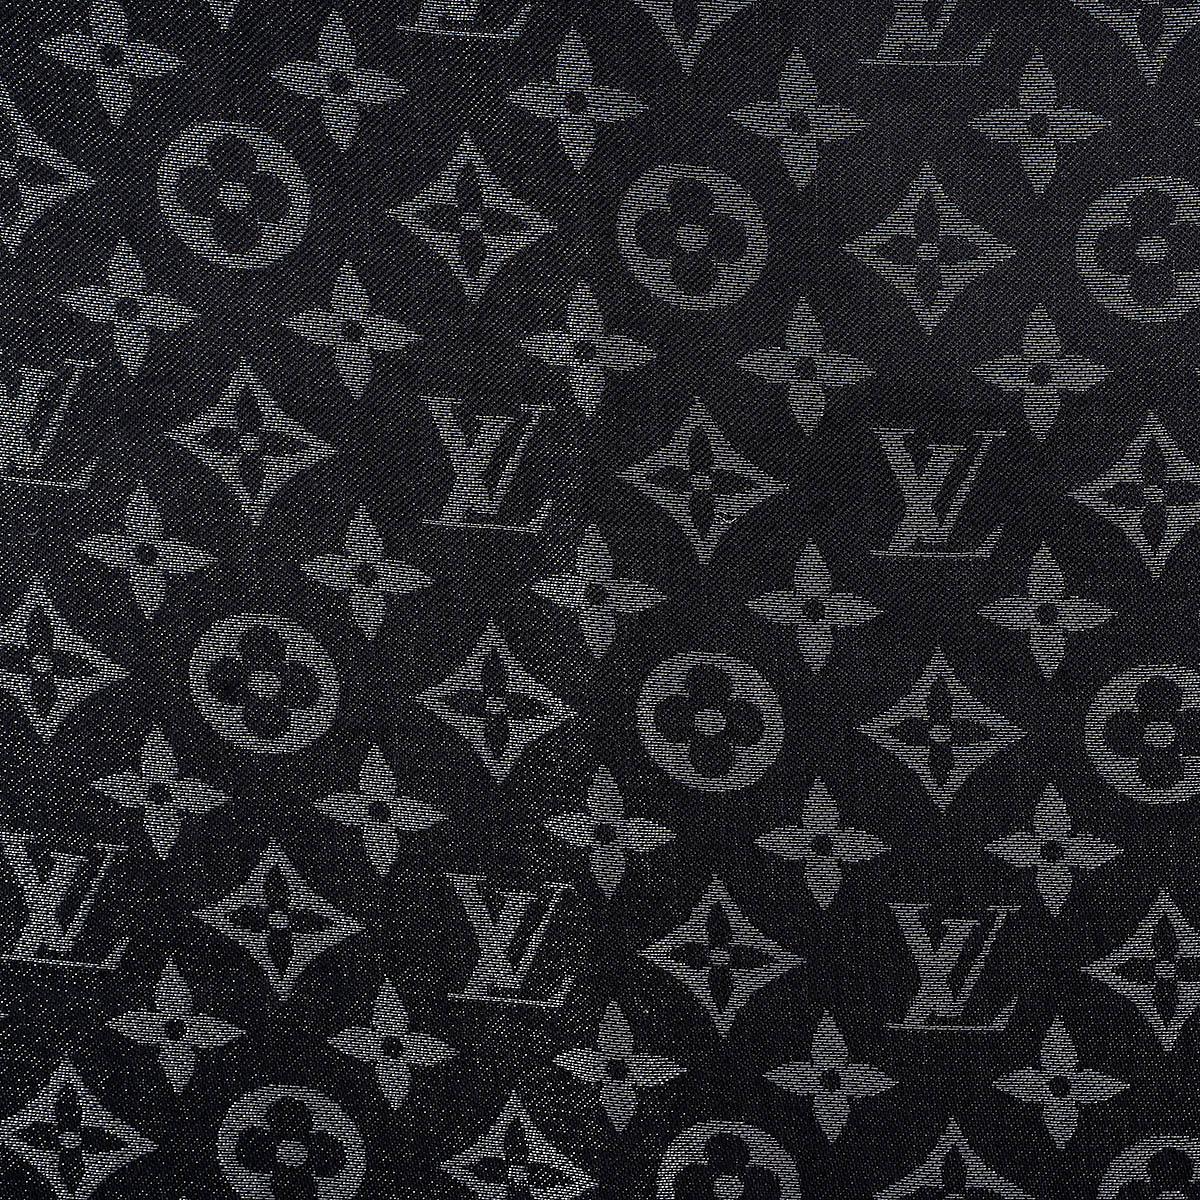 Châle 100% authentique Louis Vuitton Monogram Shine en soie (50%), métal (30%) et laine (20%) de couleur argent métallisé. N'a été porté qu'une seule fois et est dans un état pratiquement neuf. 

Mesures
Largeur	142cm (55.4in)
Longueur	142cm